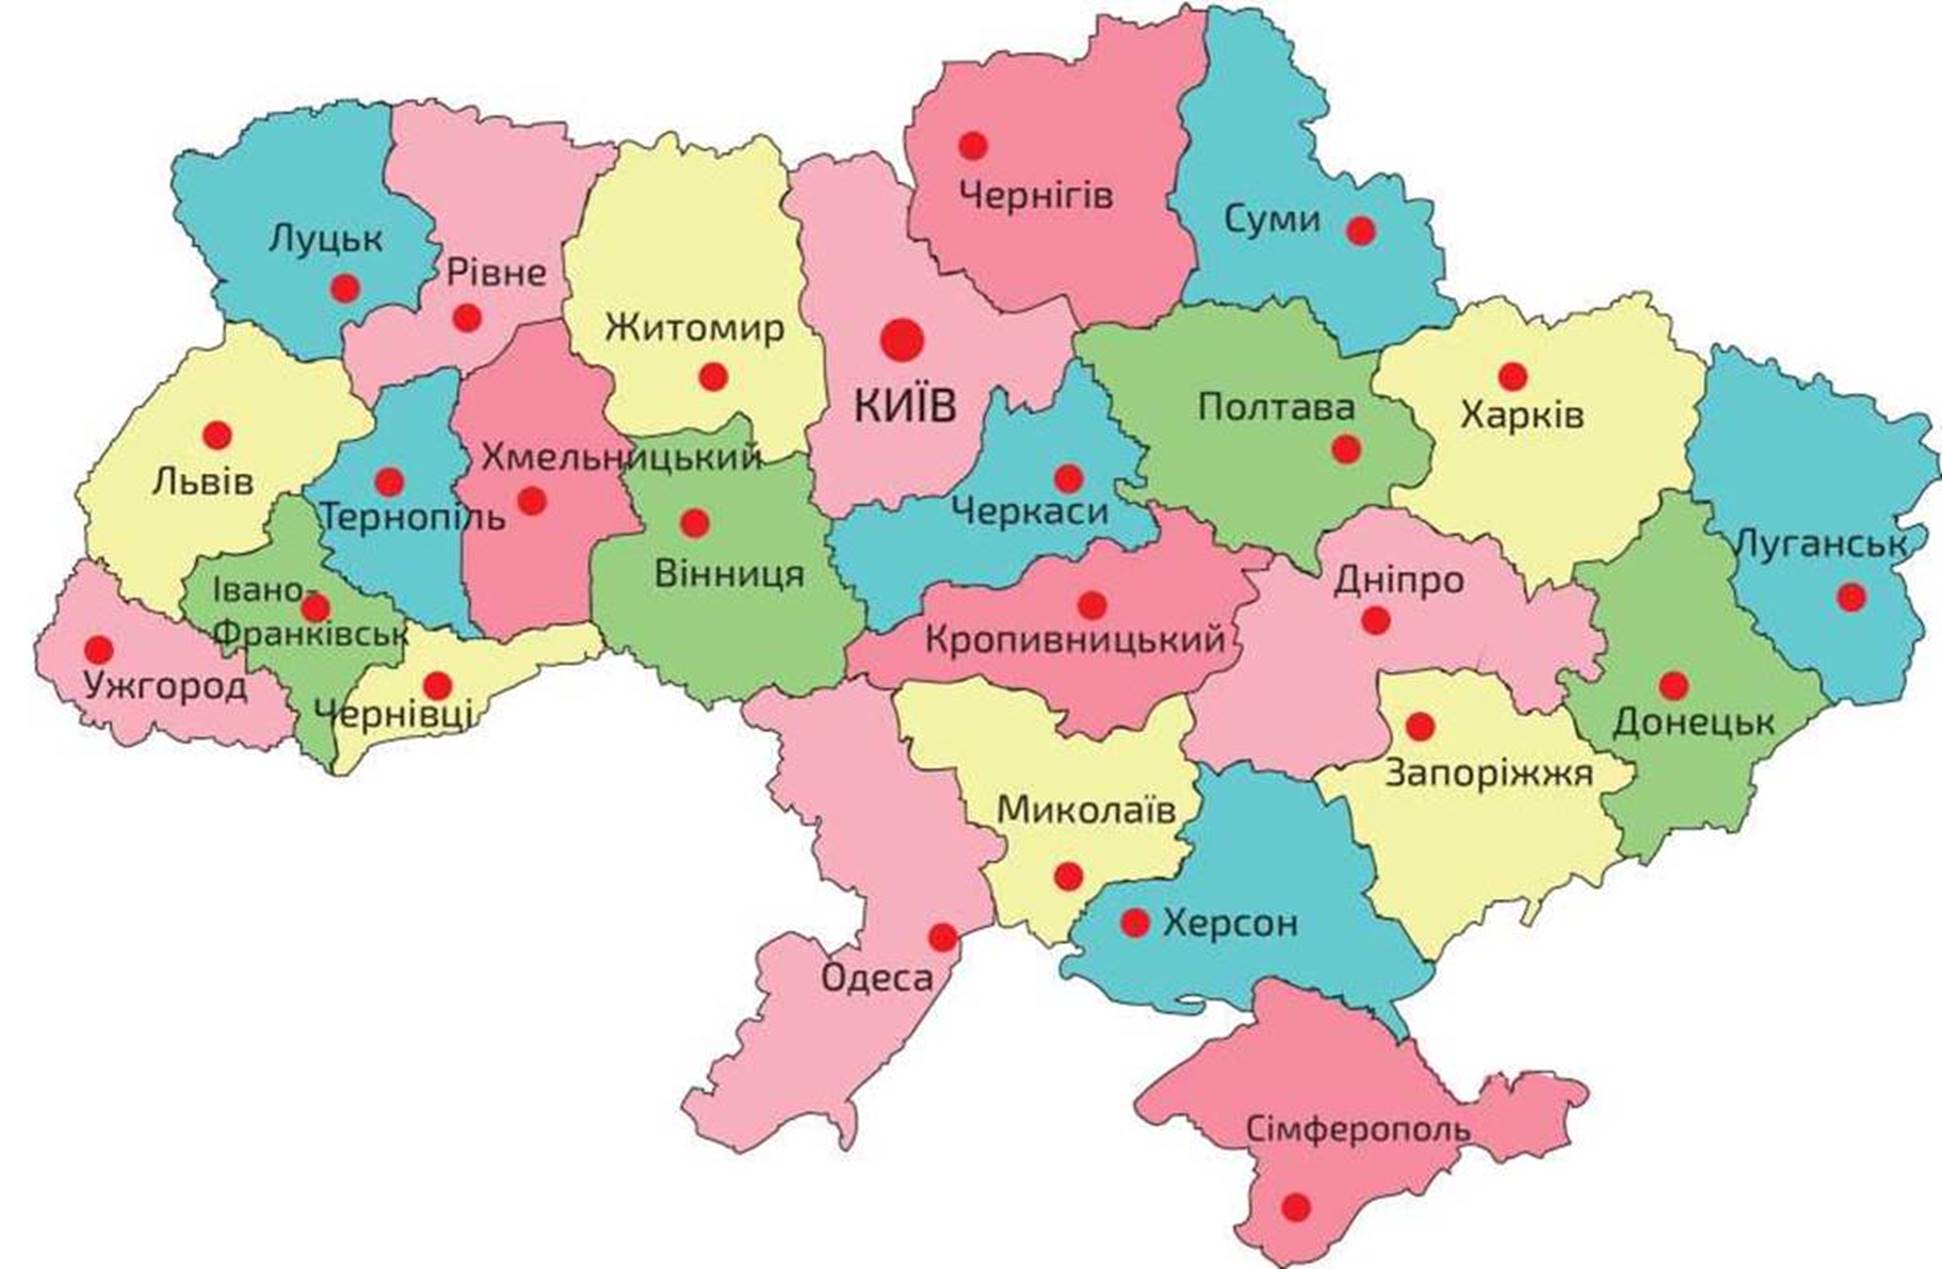 Мод на карту украины. Карта Украины Полтава на карте Украины. Полтава на карте Украины с городами. Карта Украины Полтава на карте. Полтава на карте Украины где находится.